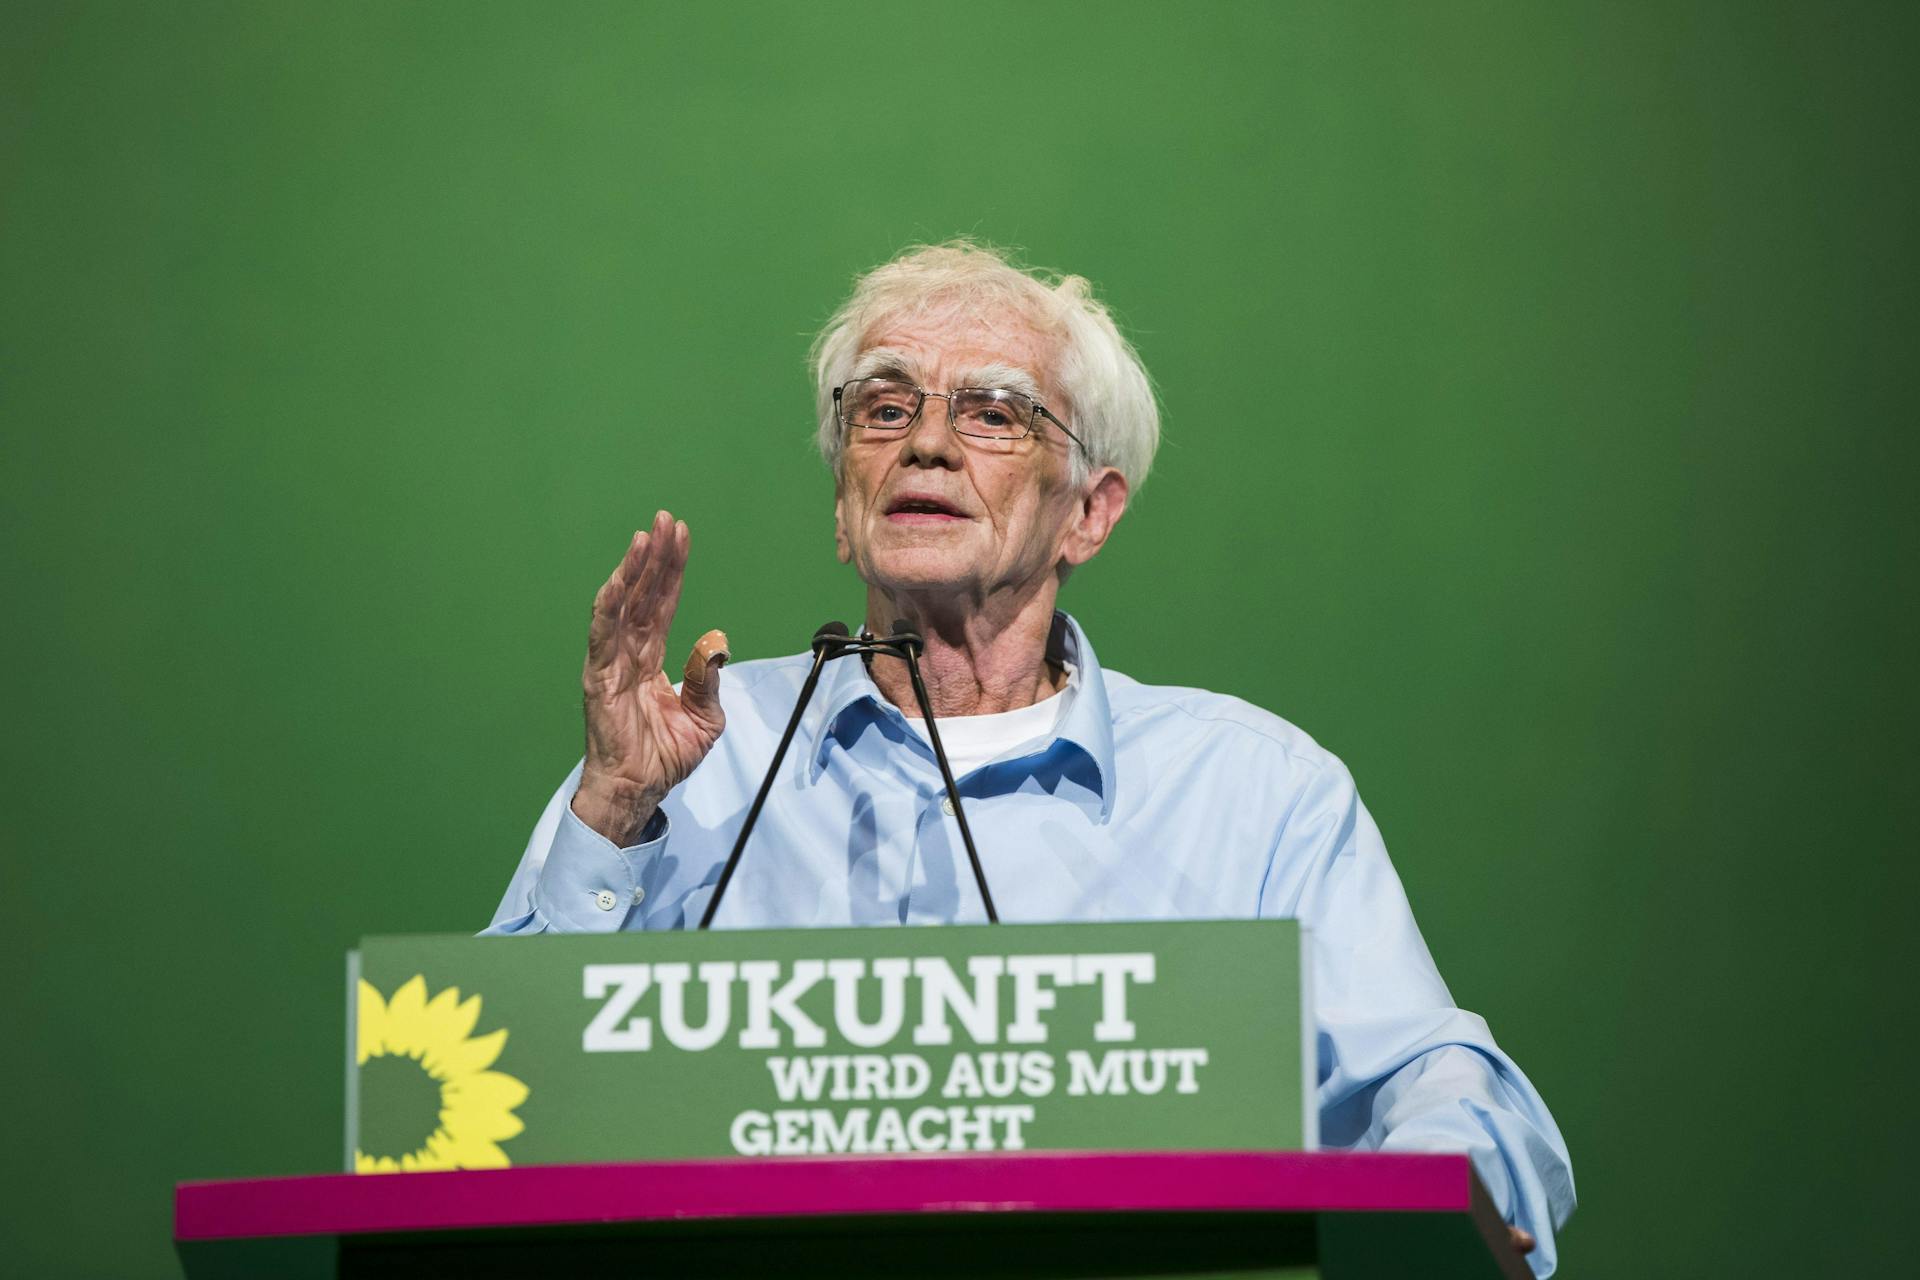 Hans-Christian Ströbele steht hinter einem Redner*innenpult mit der Aufschrift "Zukunft wird aus Mut gemacht"